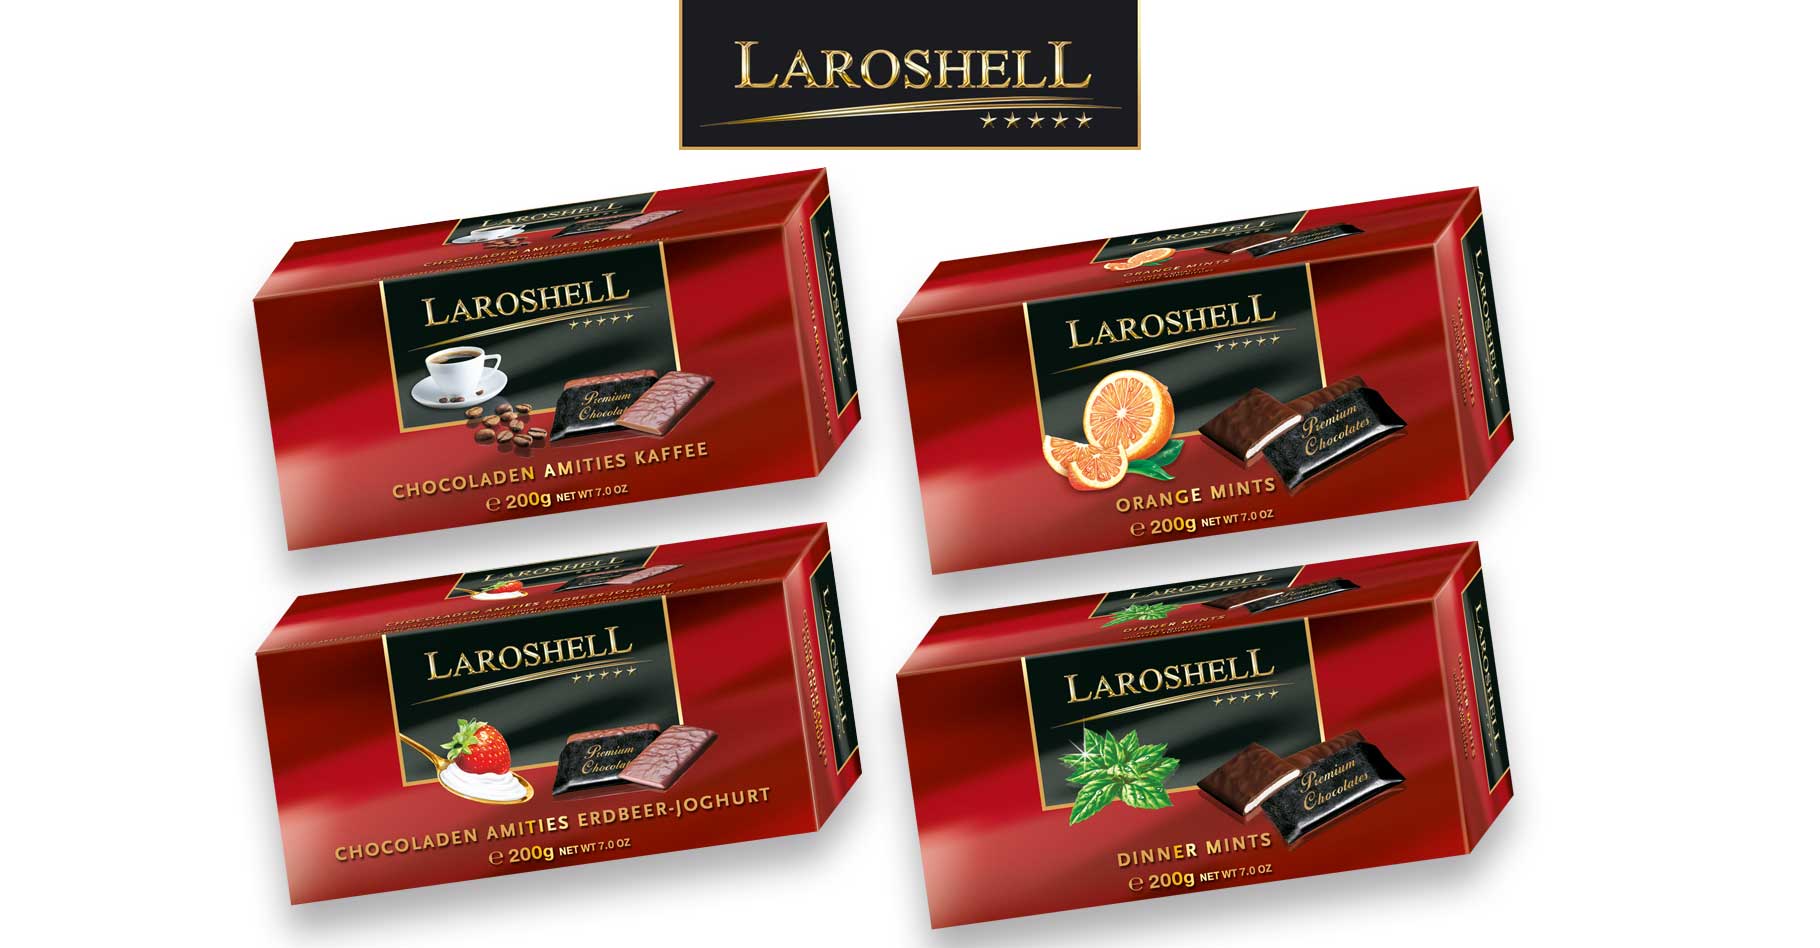 Relaunch of the international brand Laroshell